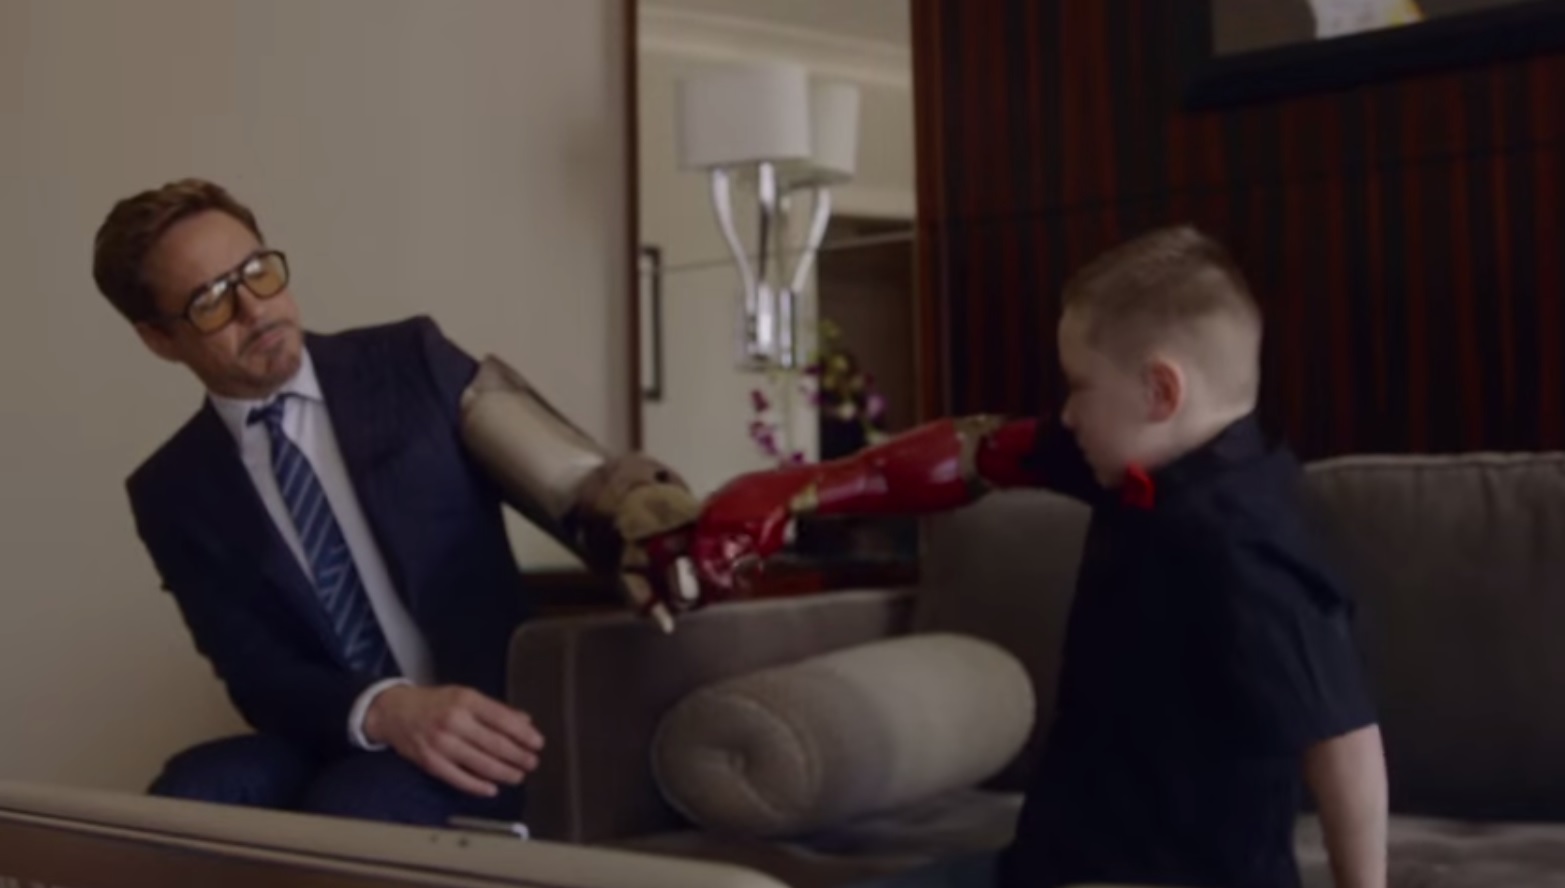 Iron Man faz surpresa a criança sem um braço [vídeo]